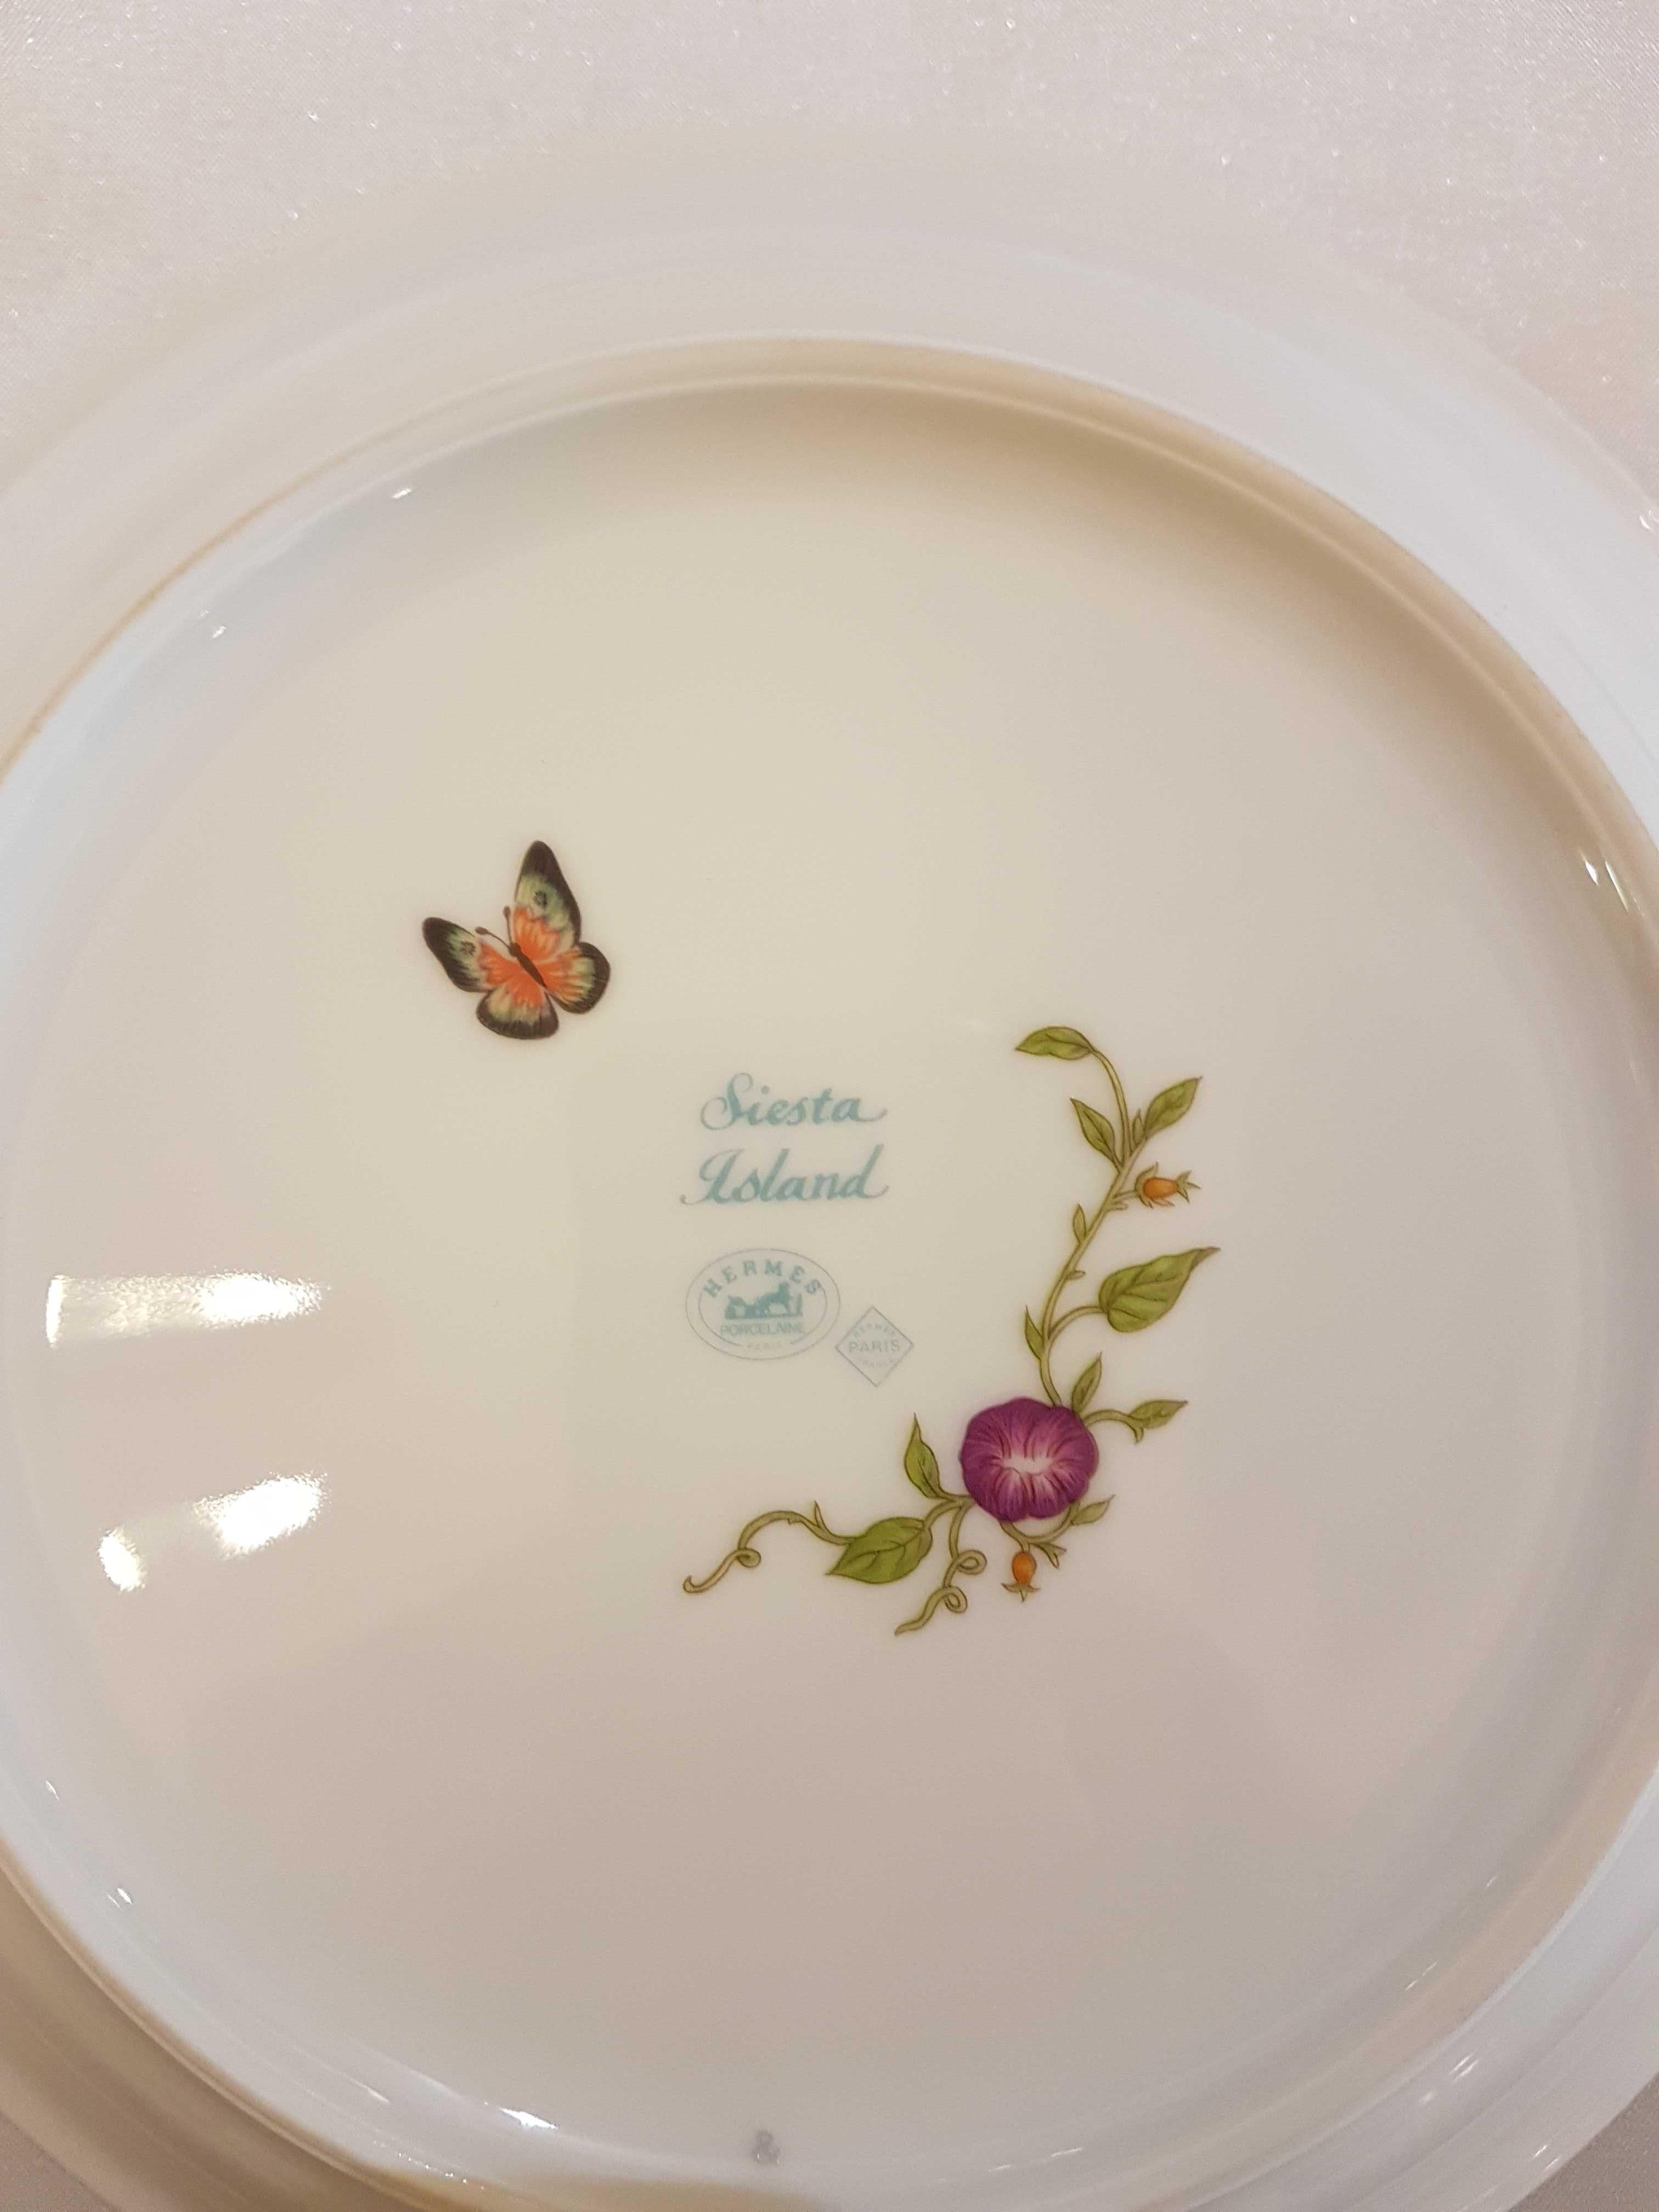 Hermès Siesta Island Porcelain Set of Two Cereals Bowls, Modern 3